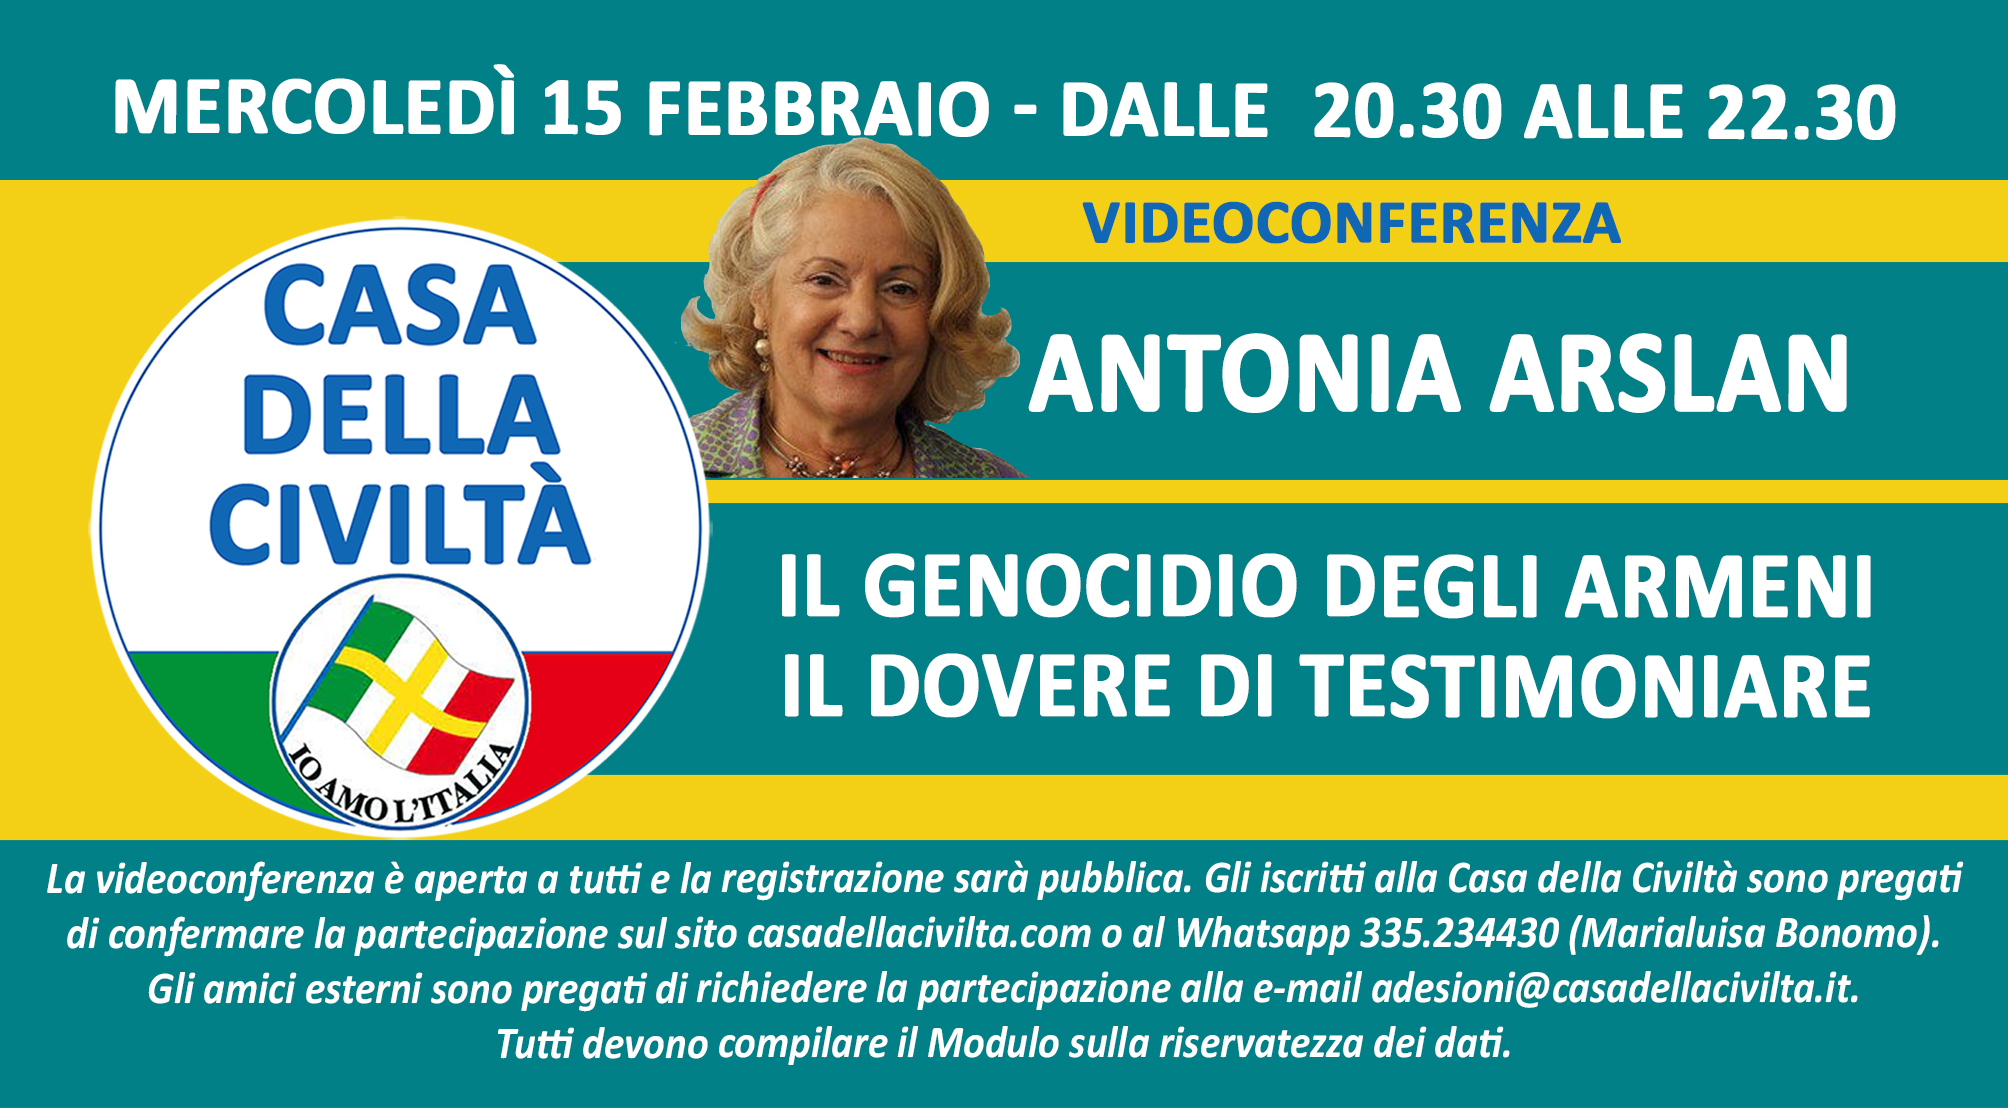 MARIALUISA BONOMO: “Videoconferenza di Antonia Arslan sul Genocidio degli armeni (Mercoledì 15 febbraio, ore 20,30)”